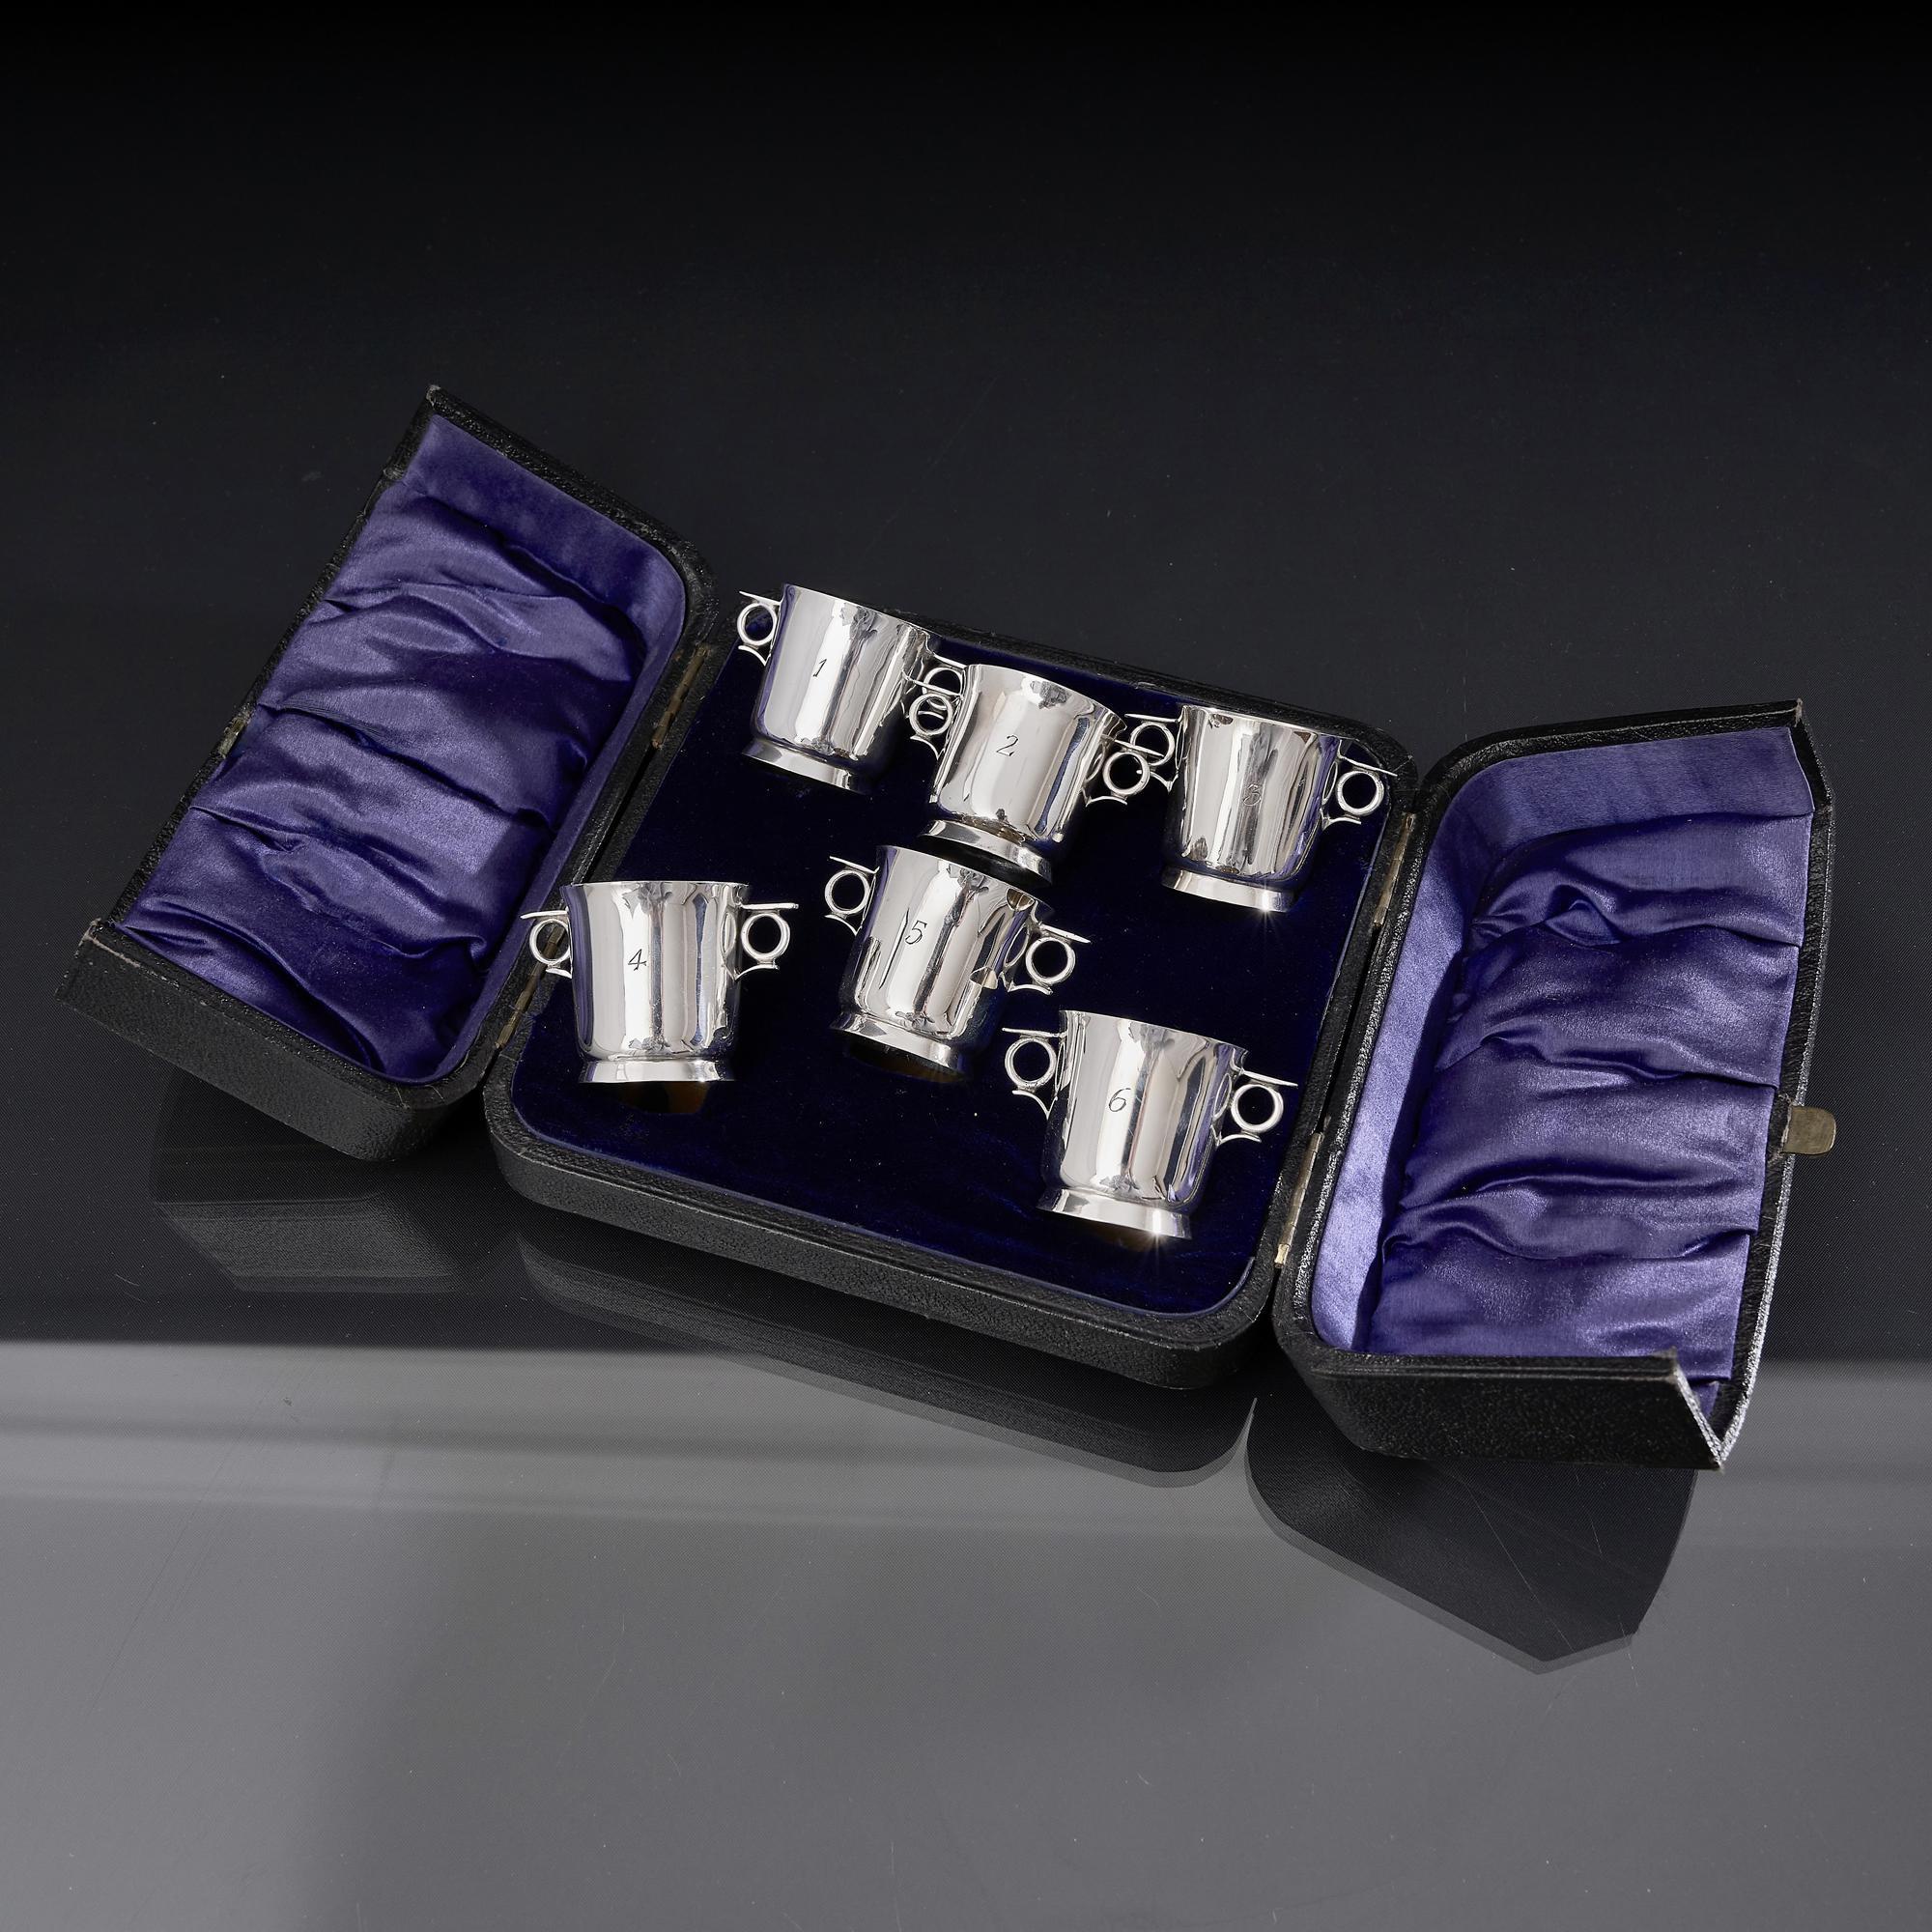 Satz von sechs Whiskey-Tots aus antikem amerikanischem Silber in Form von Weinkühlern mit zwei Henkeln.  Sie sind von eins bis sechs nummeriert und werden in ihrem Original-Etui präsentiert. Jedes Kind ist nummeriert.

Ein Tot of Whiskey ist eine